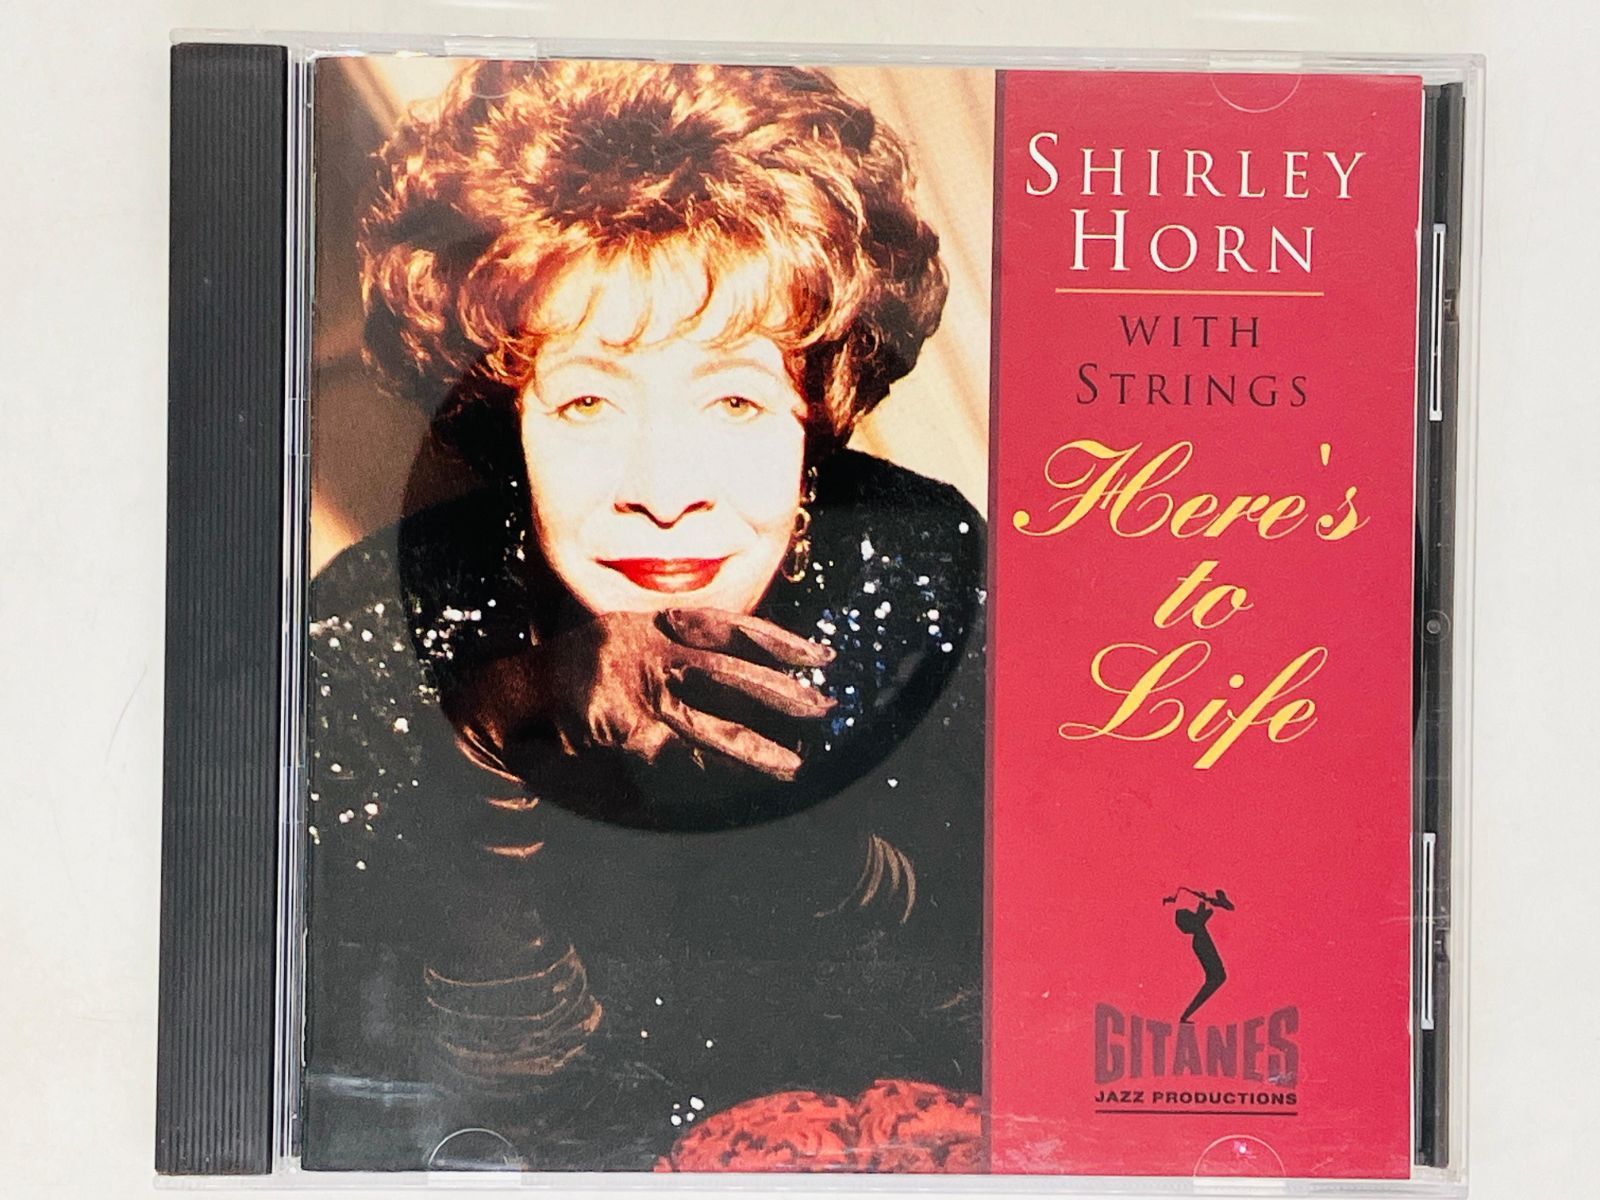 シャーリー・ホーン・ウィズ・ストリングス　ヒアズ・トゥ・ライフ　Shirley Horn with Strings Here's to Life